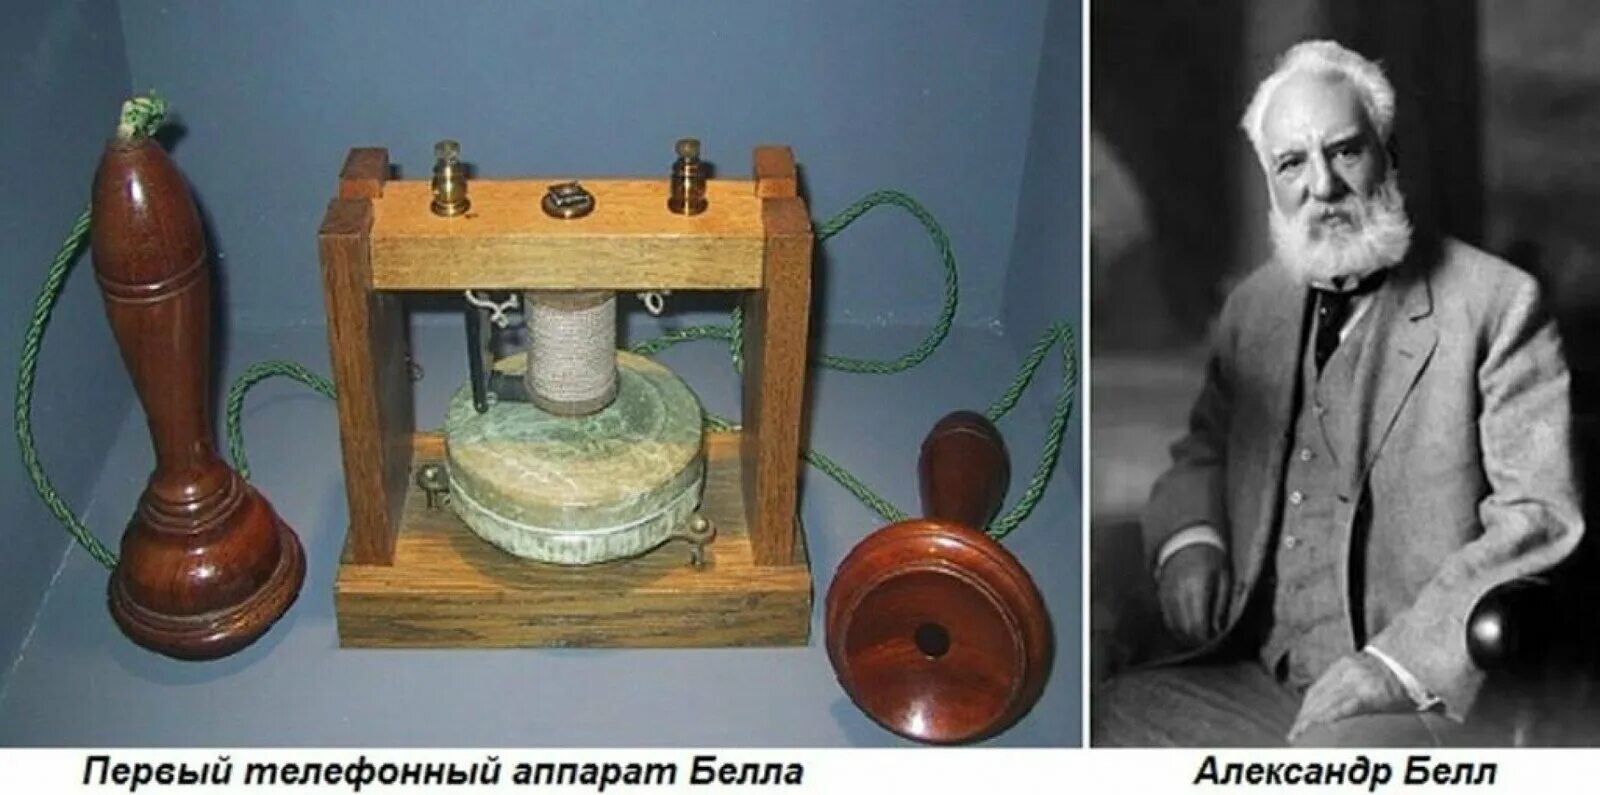 Телефон 1876 года. В 1876 году американец а. Белл изобрел телефон.